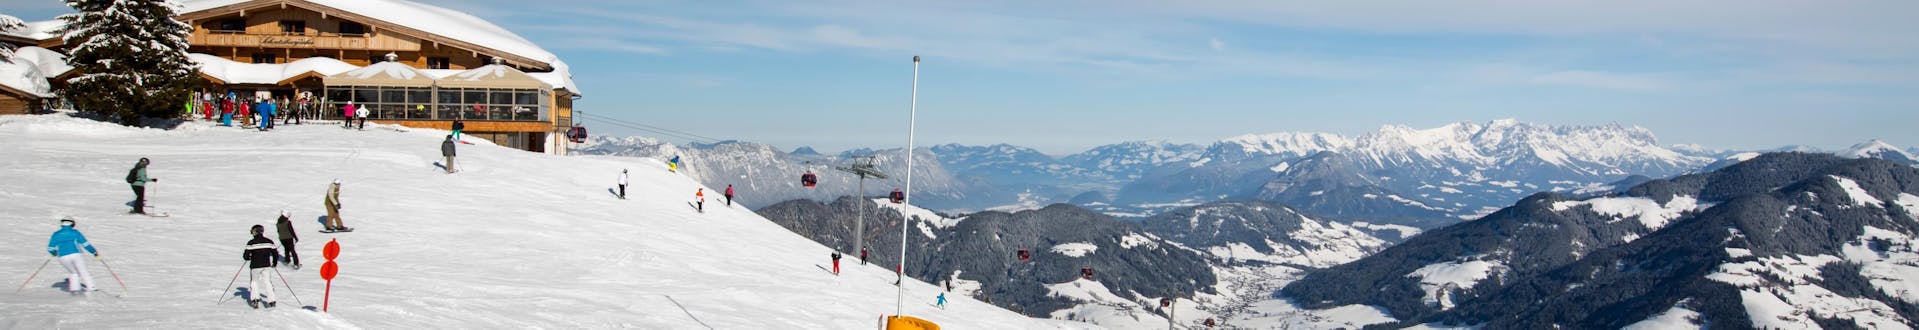 Adultes et enfants skiant dans la station de ski de Wildschonau.